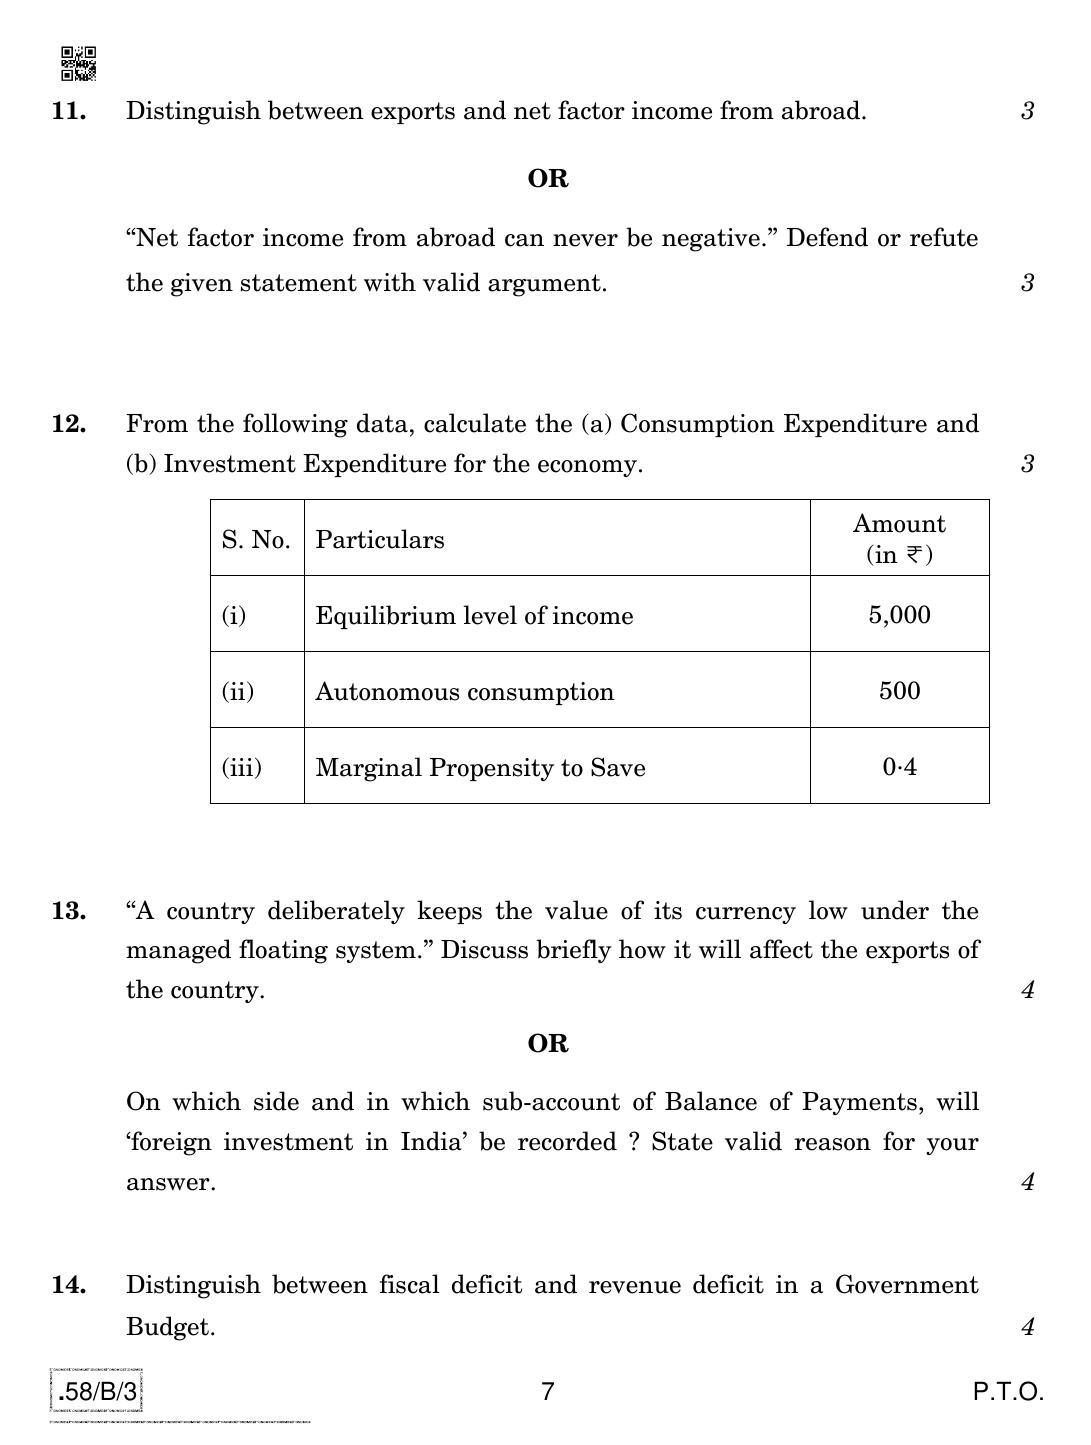 CBSE Class 12 58-C-3 - Economics 2020 Compartment Question Paper - Page 7